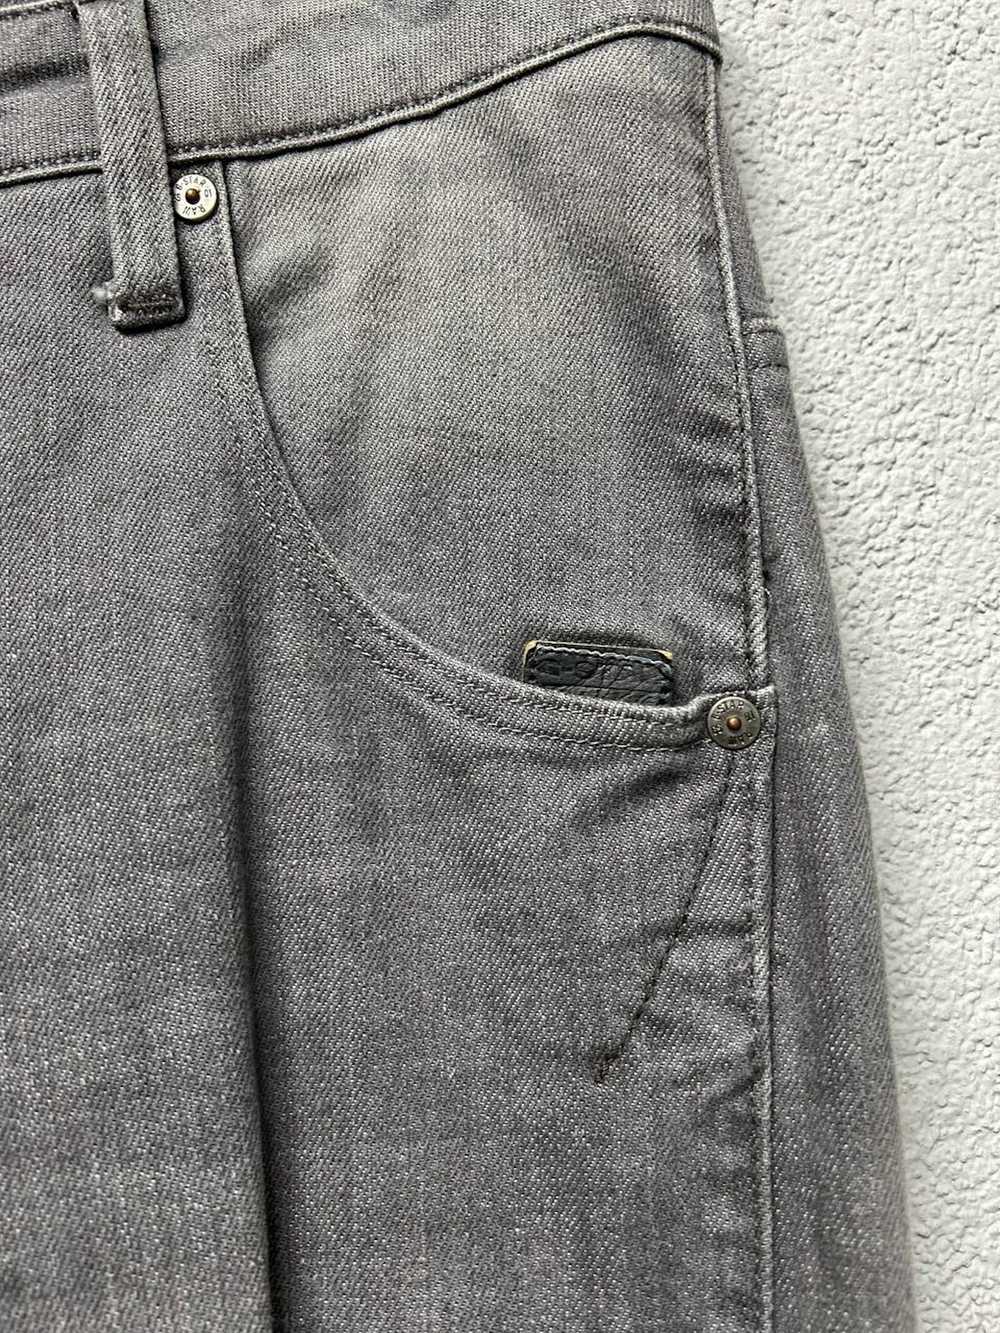 Gstar G Star Raw ARC 3d jeans mens W 30 L 34 - image 4